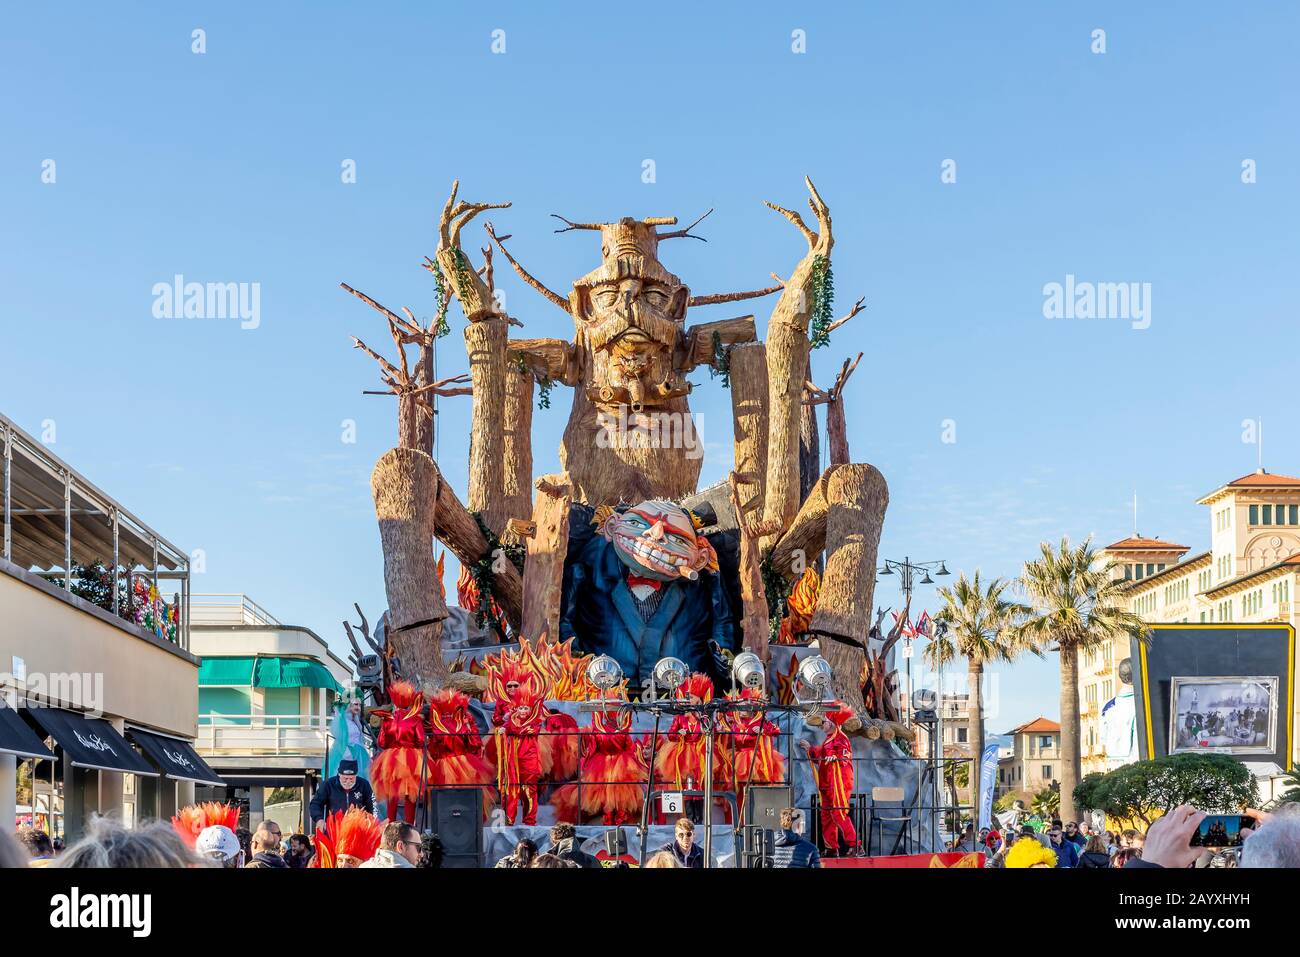 Der allegorische Karnevalsfloß nannte 'S i fossi foco' in der Parade in Viareggio, Italien Stockfoto